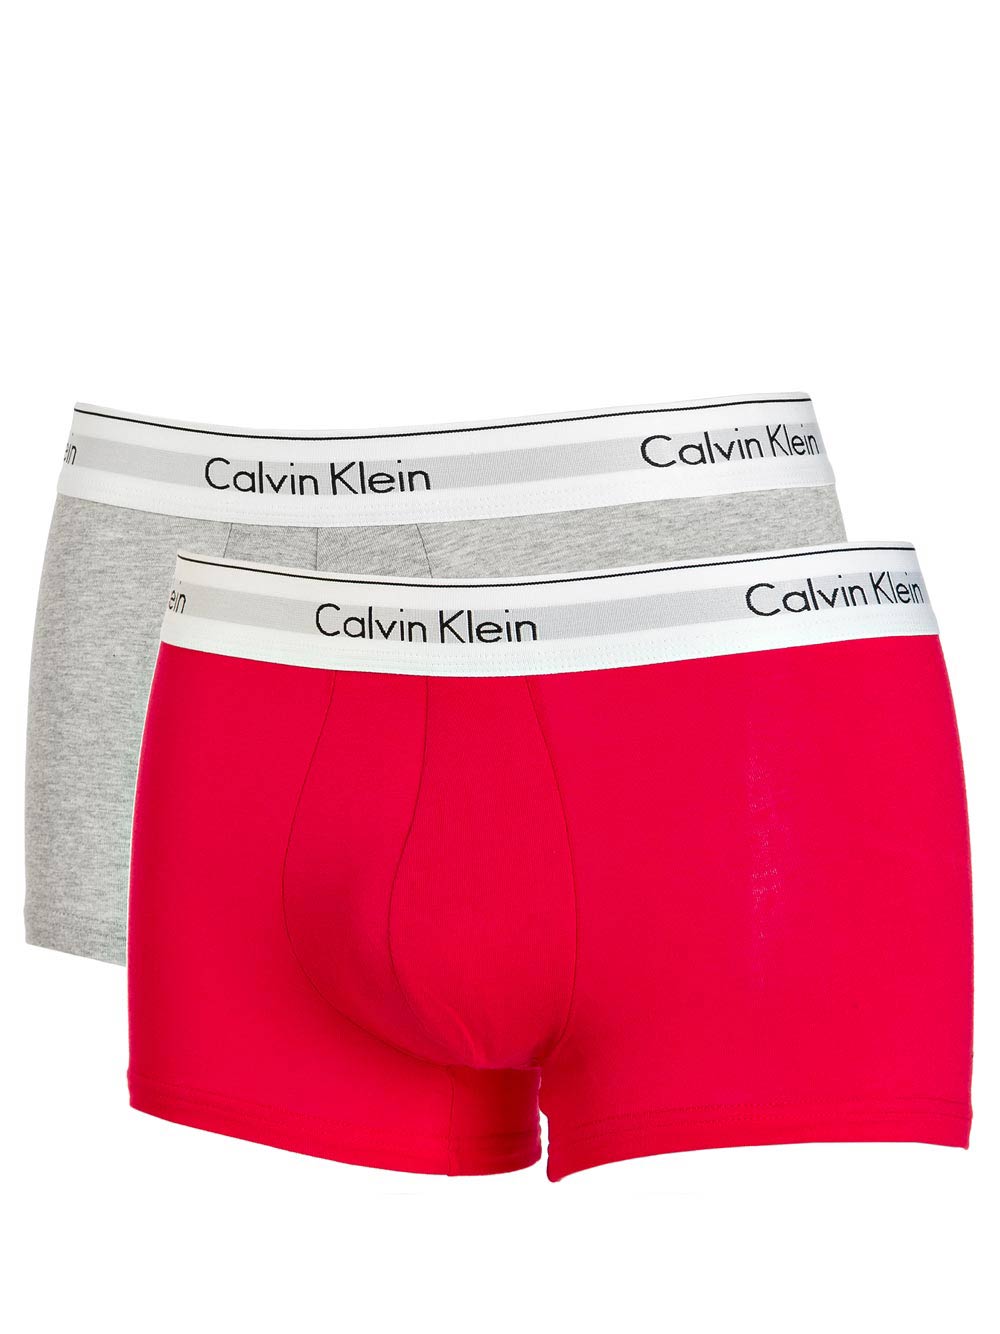 Boxer Bipack Uomo Calvin Klein in Cotone Rosso e Grigio - NB1393A5EX | eBay